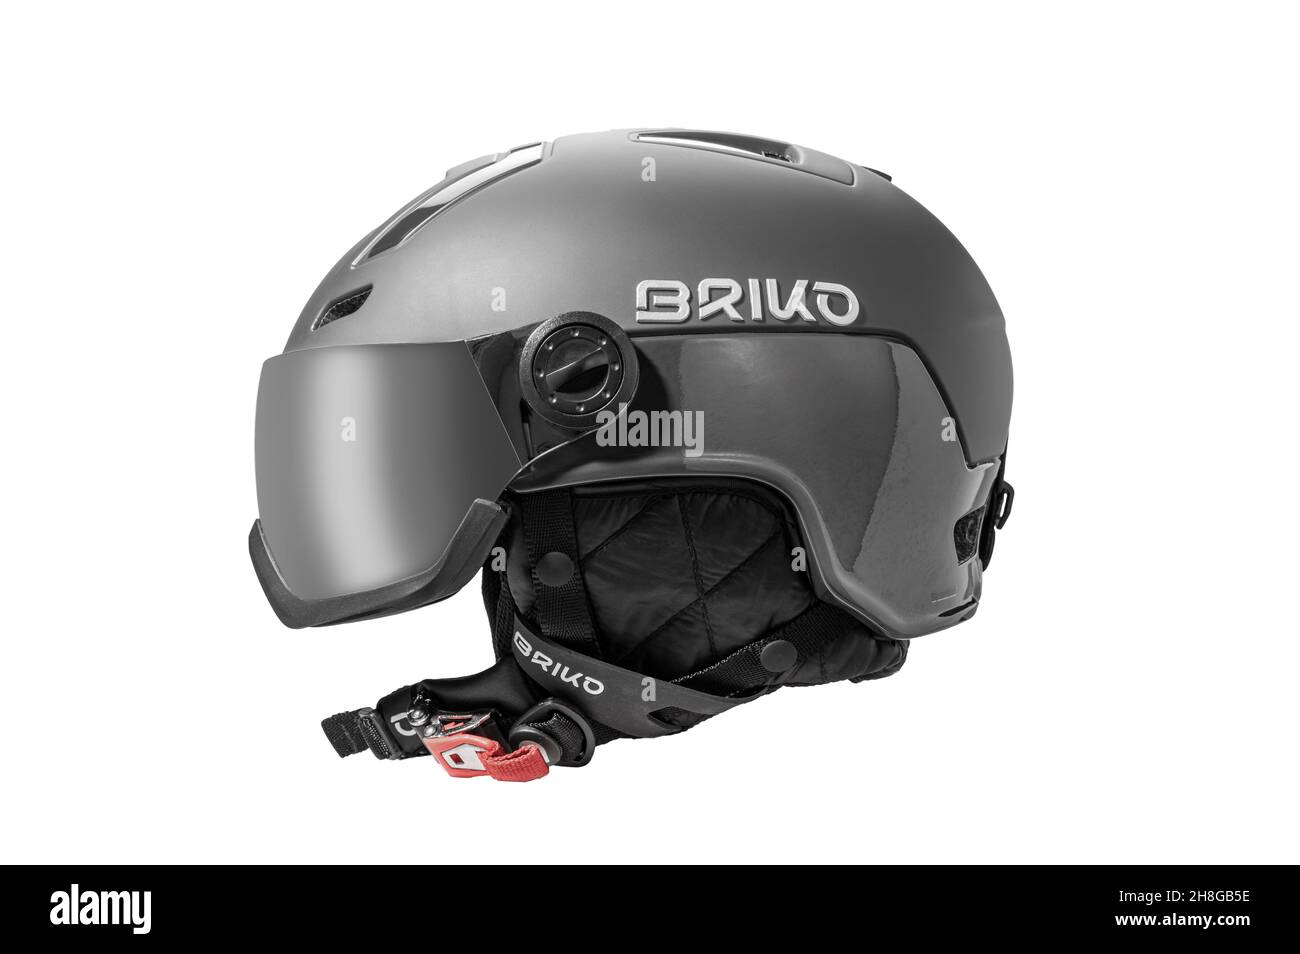 Ski helmet Banque d'images détourées - Page 2 - Alamy